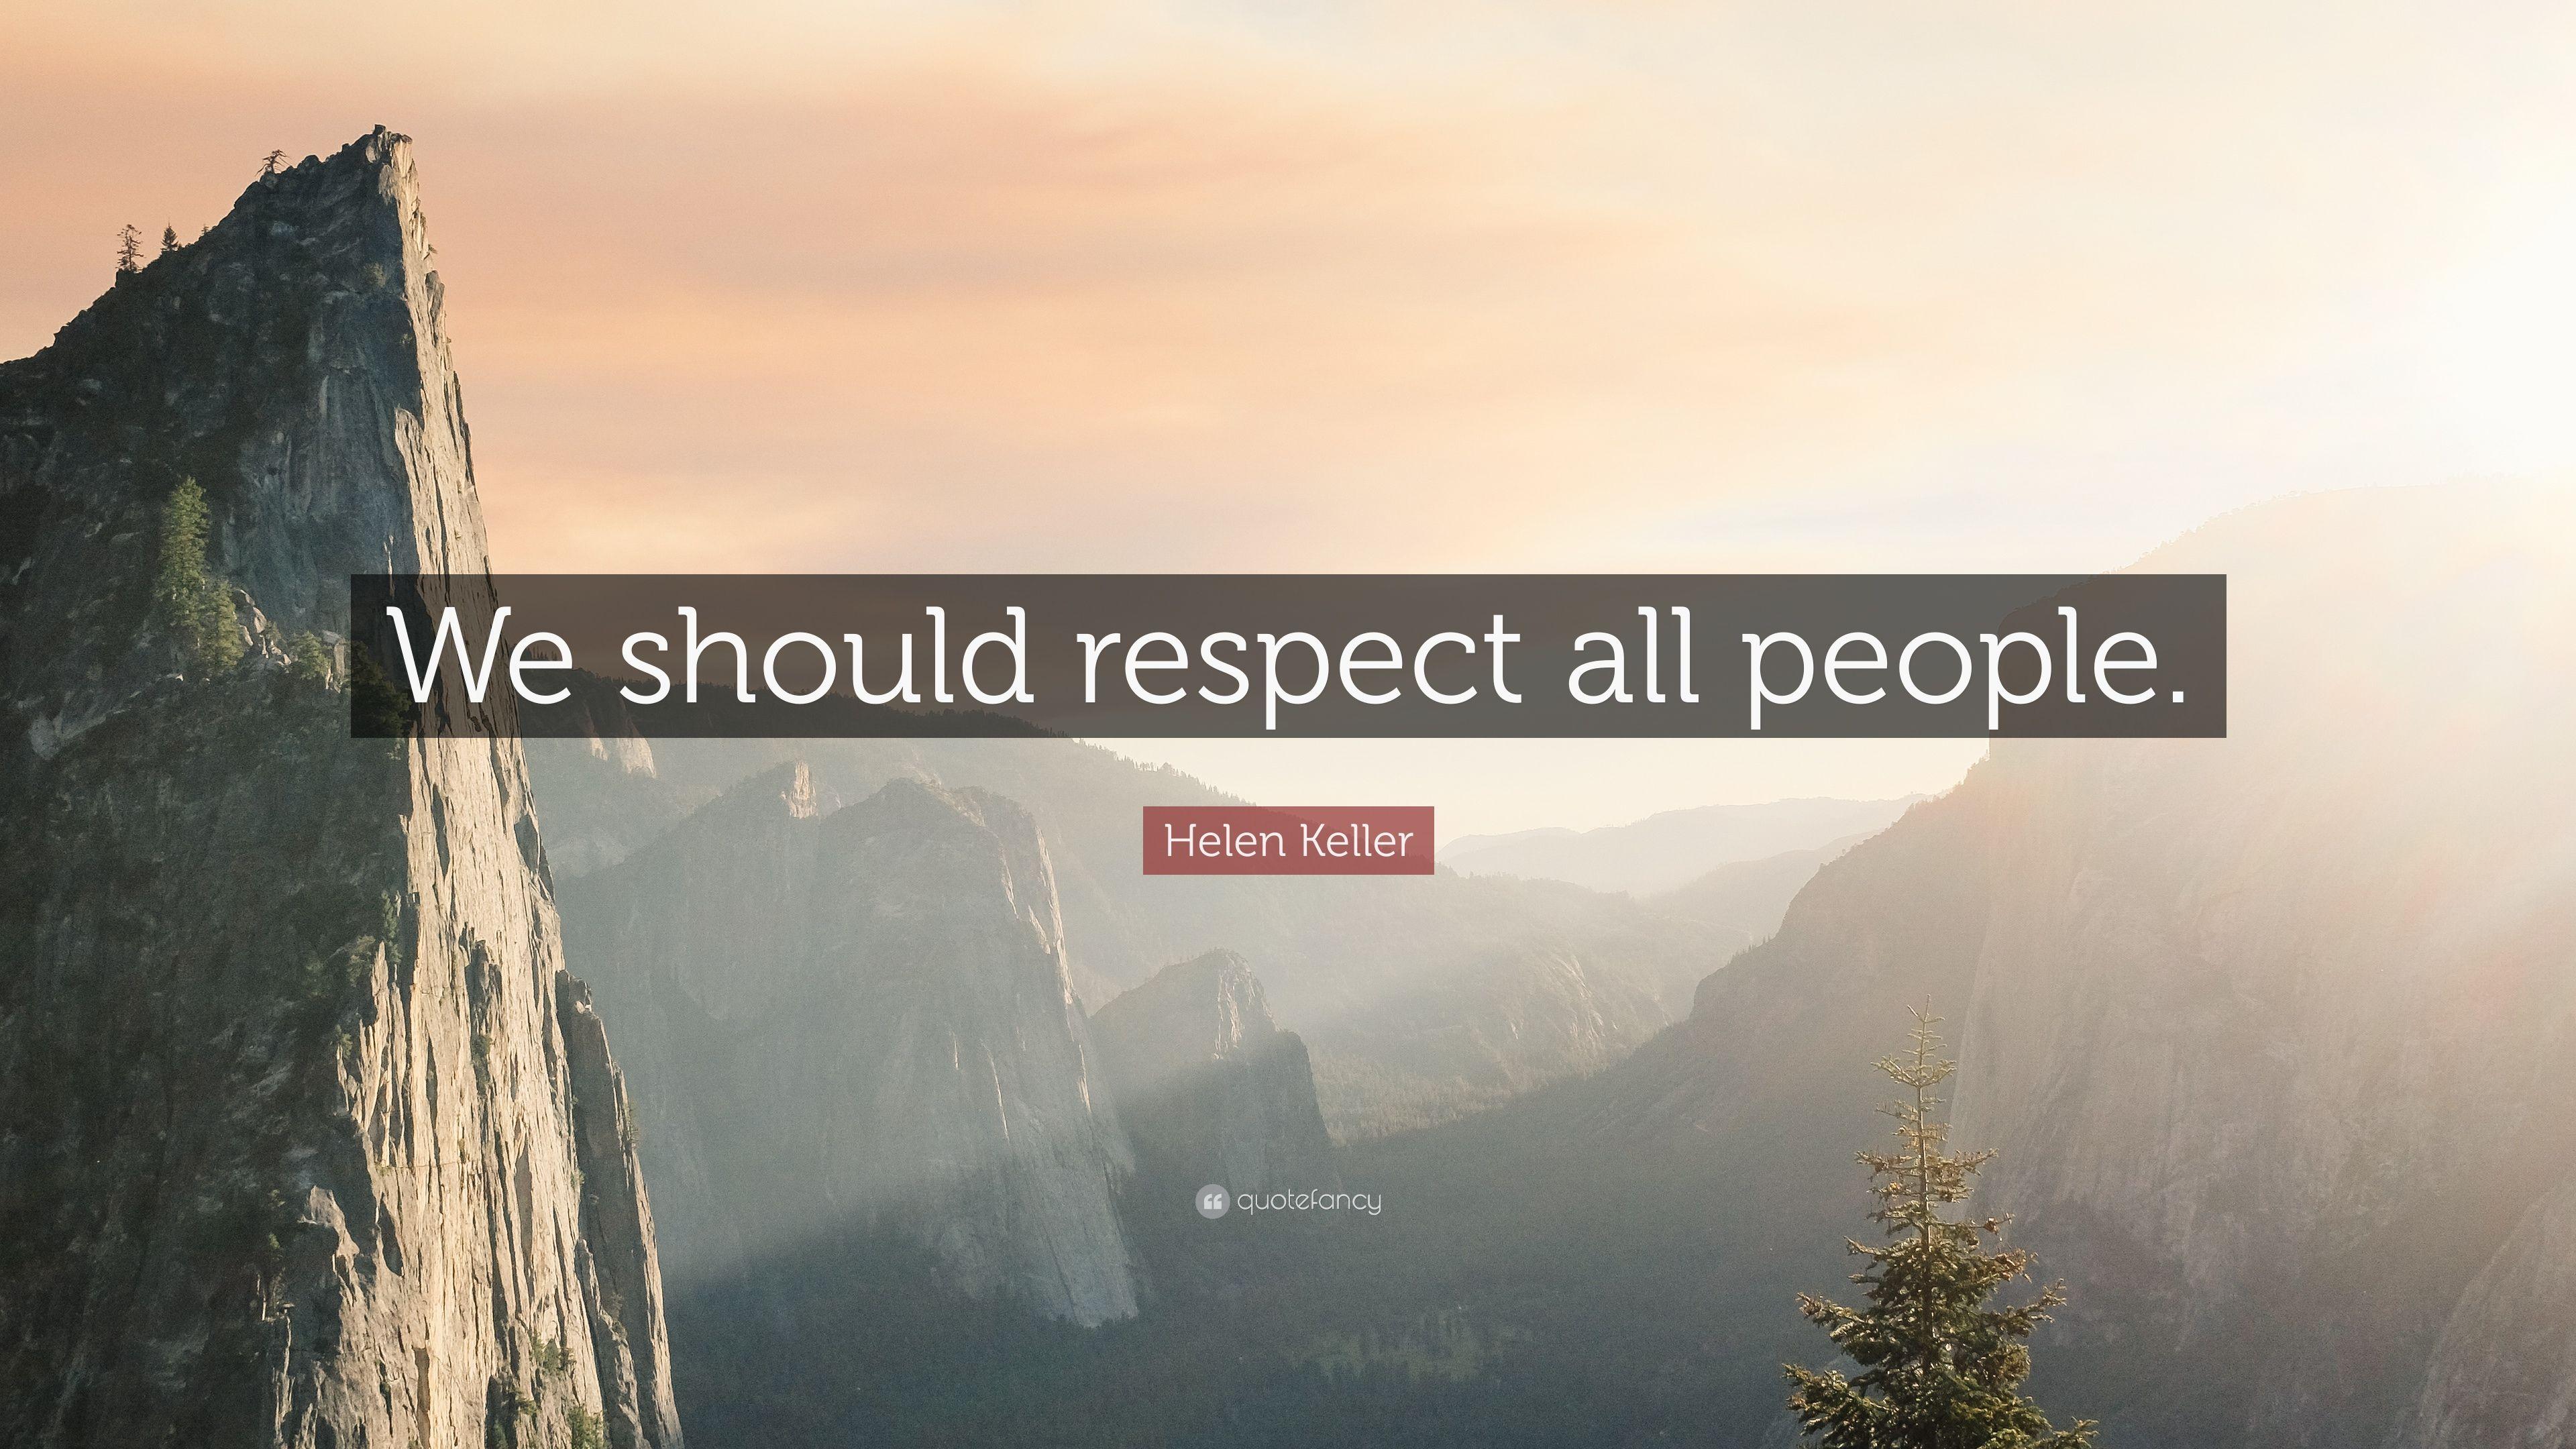 Helen Keller Quote: “We should respect all people.” 10 wallpaper